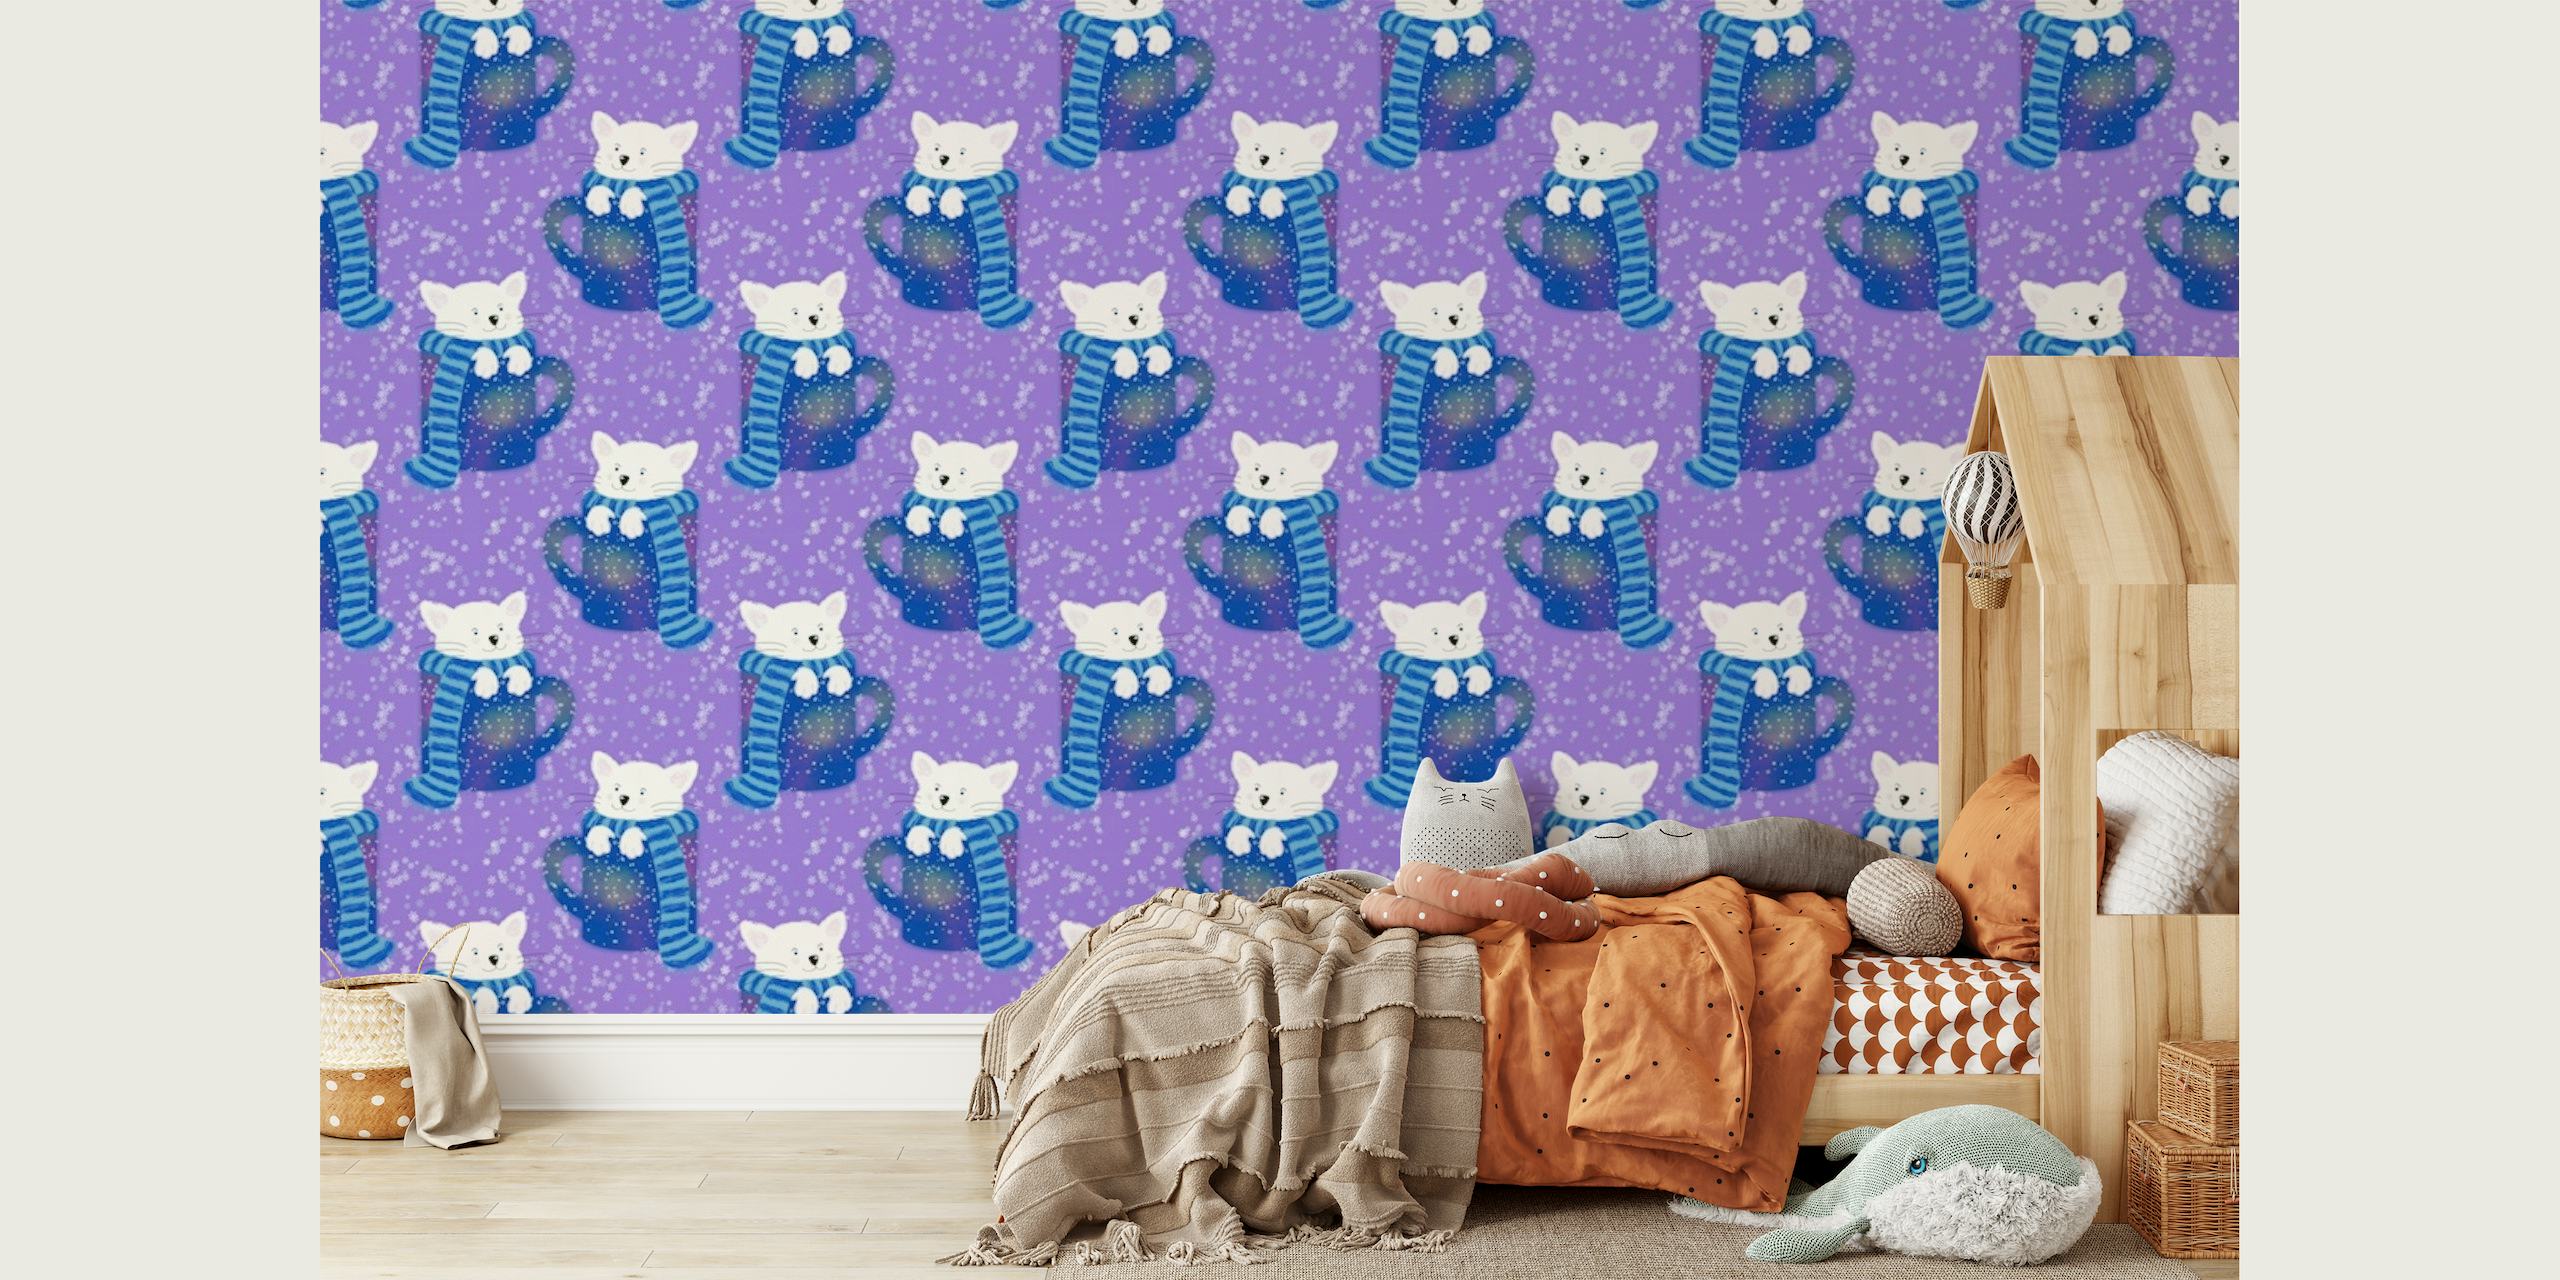 Adorabili gatti con motivo a tazze da tè su una parete con sfondo viola